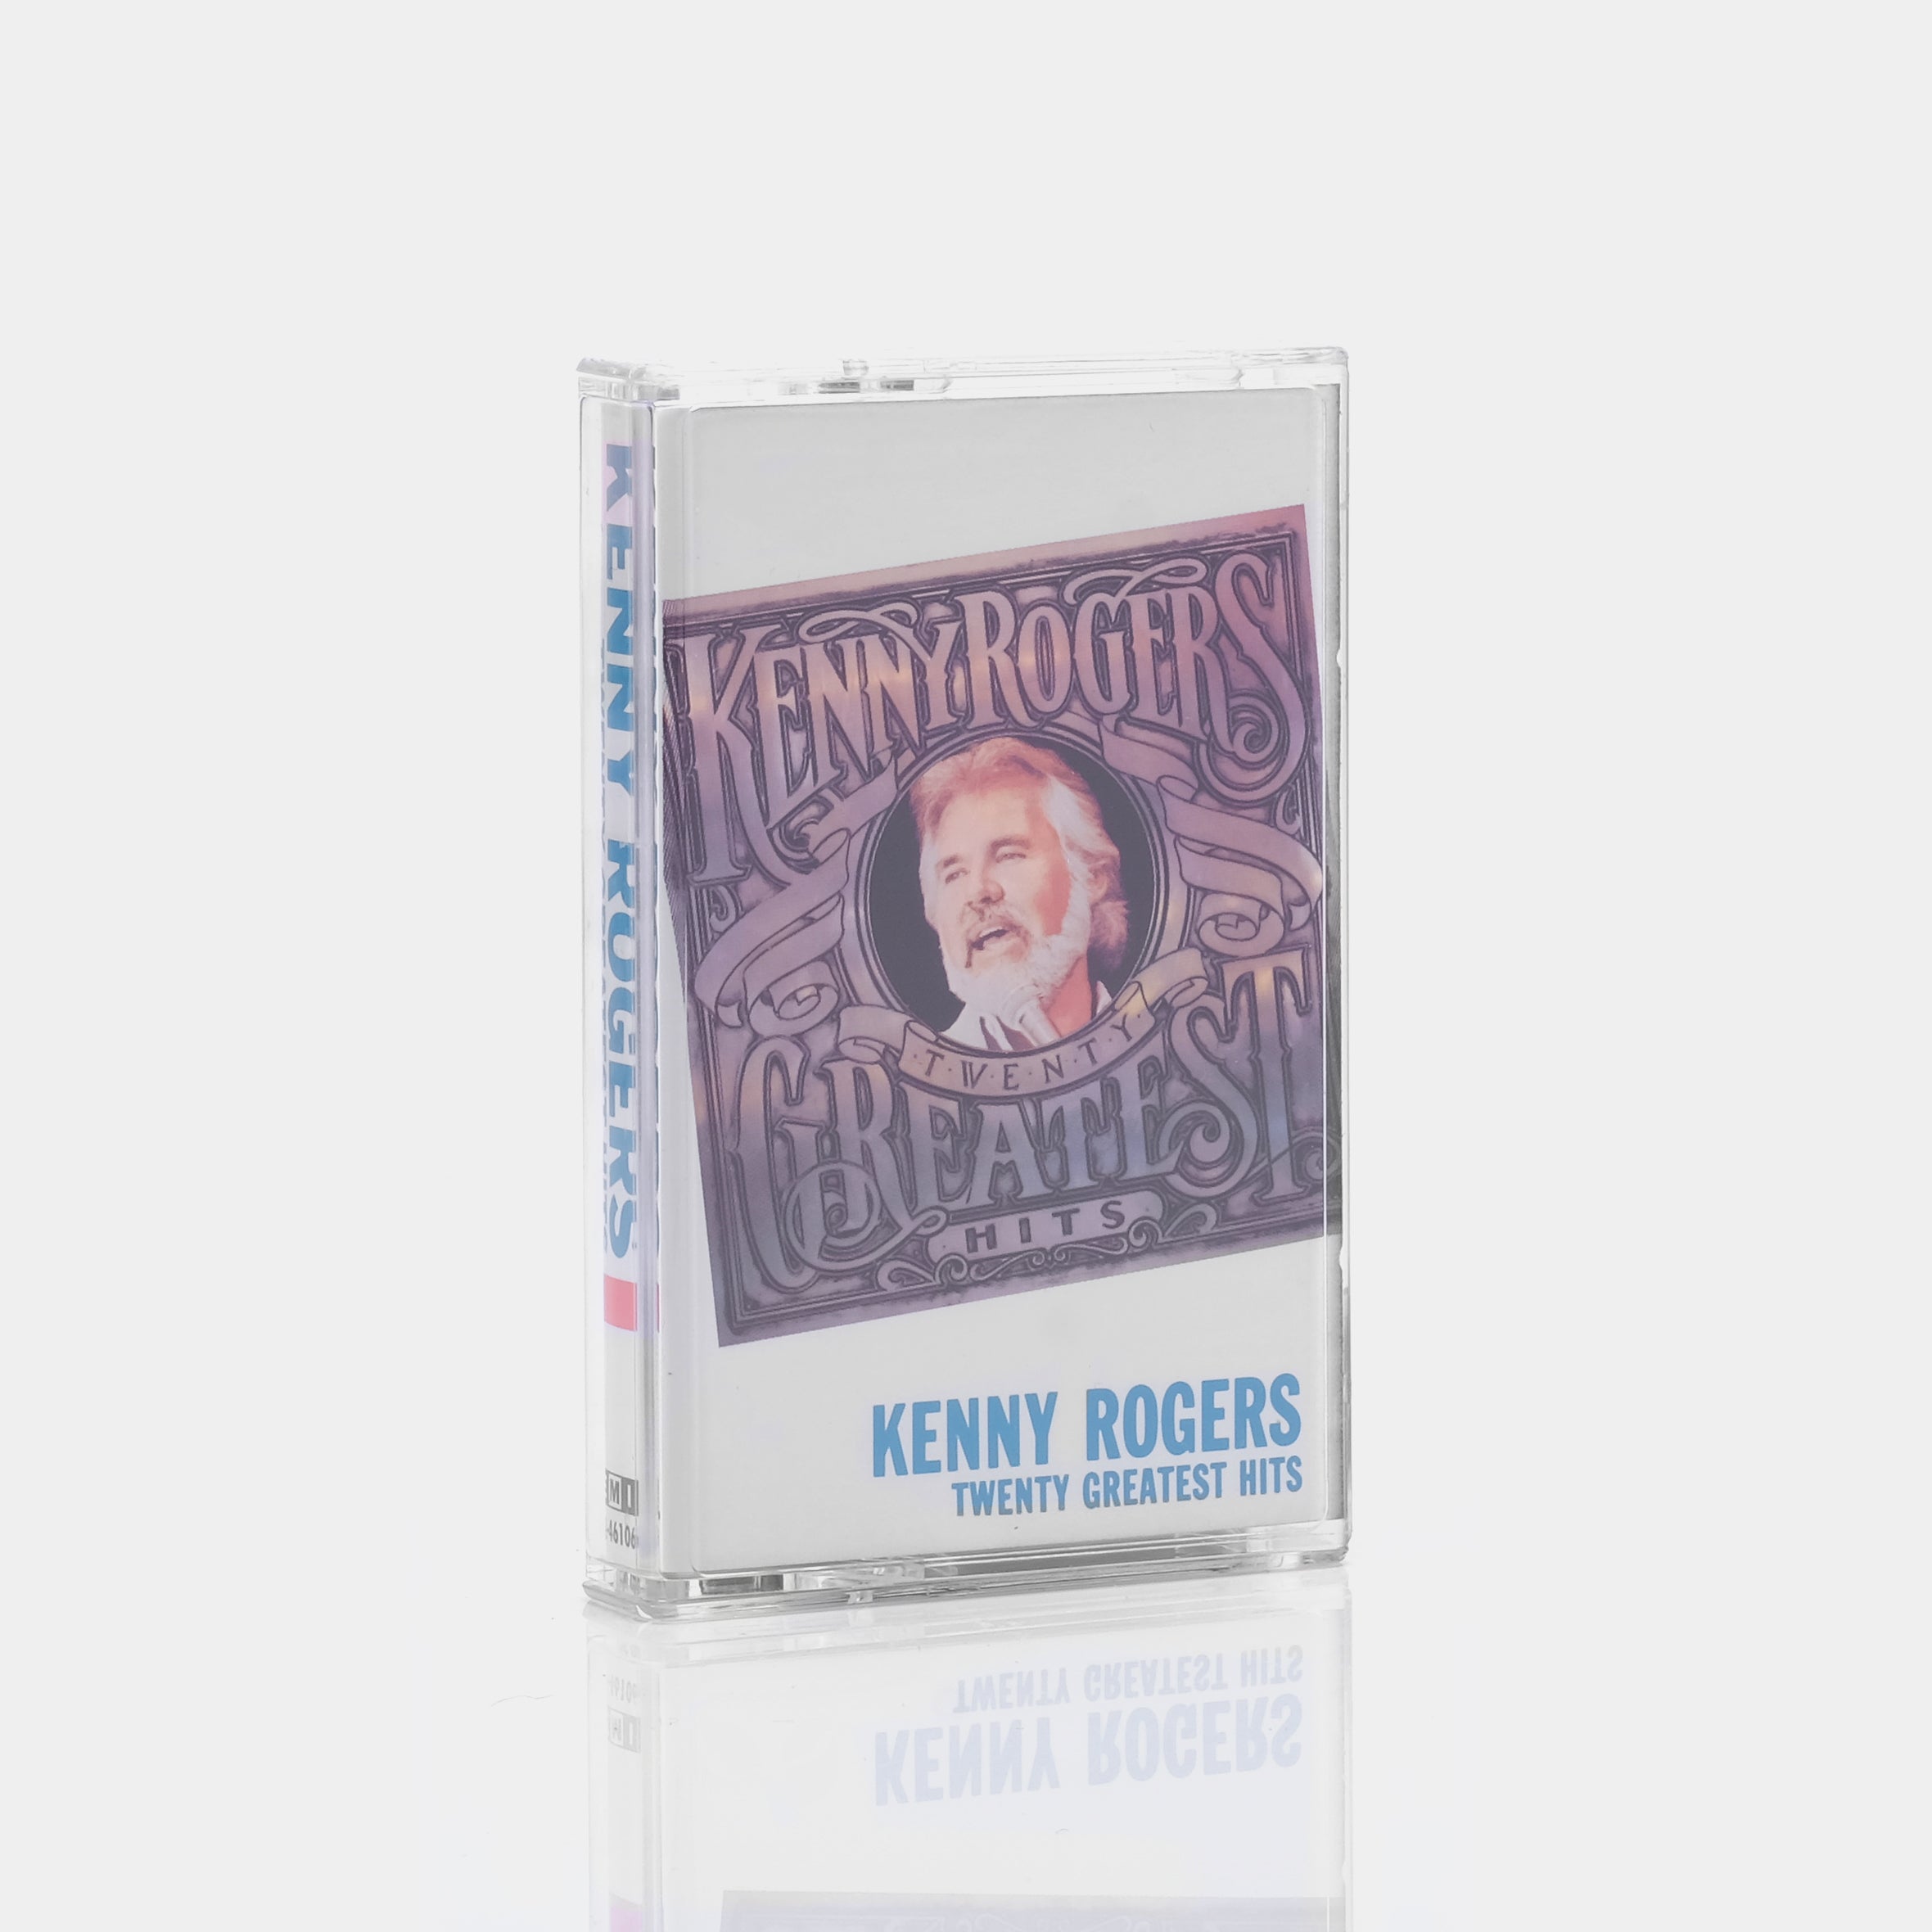 Kenny Rogers - Twenty Greatest Hits Cassette Tape